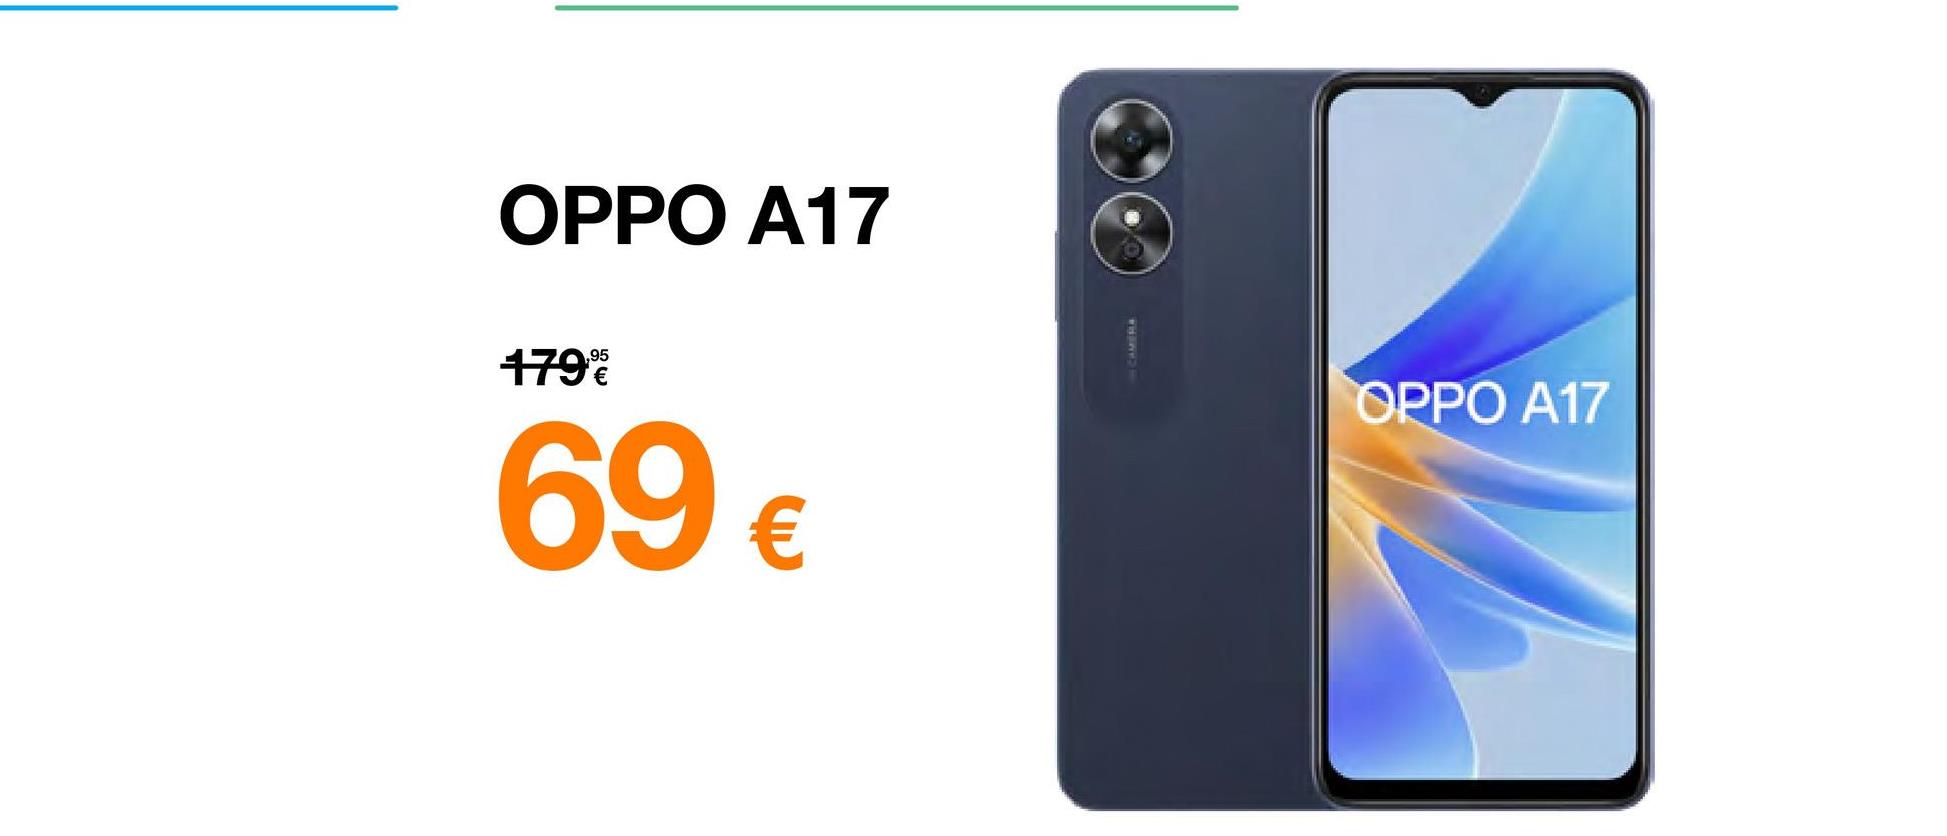 OPPO A17
179%
69 €
CAMERA
OPPO A17